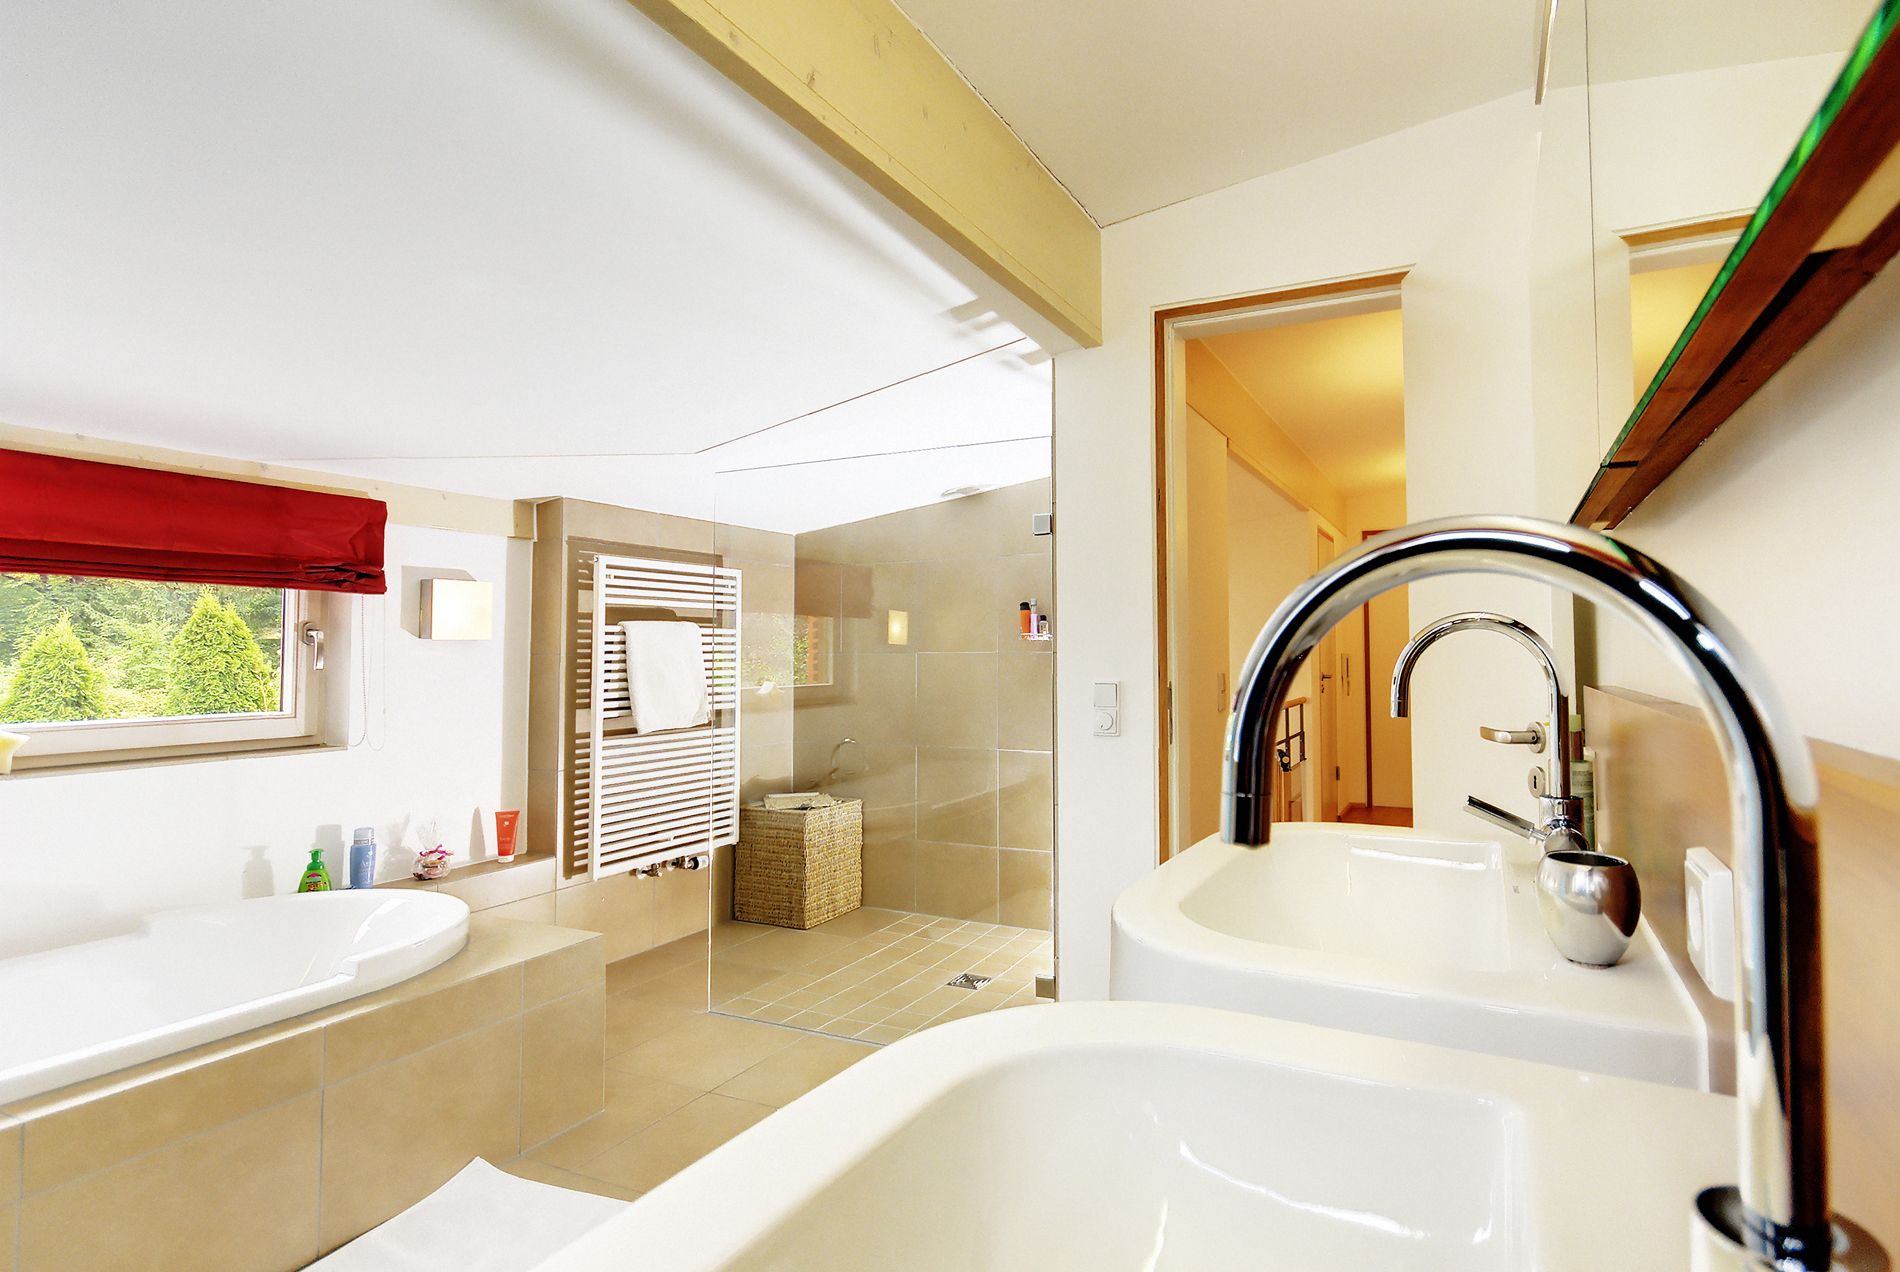 Modernes Badezimmer mit hellem Licht und sandfarbenen Fliesen